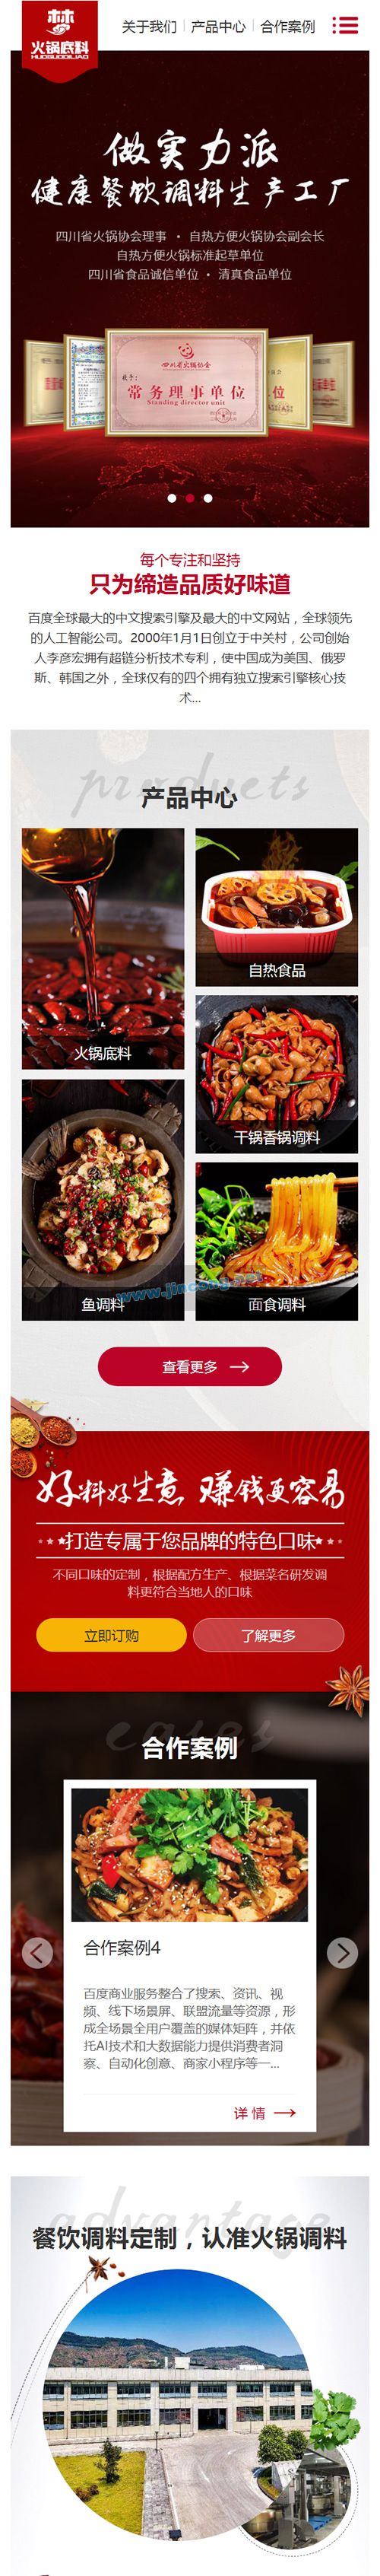 高端火锅底料餐饮调料食品营销型网站源码 红色餐饮加盟网站织梦模板